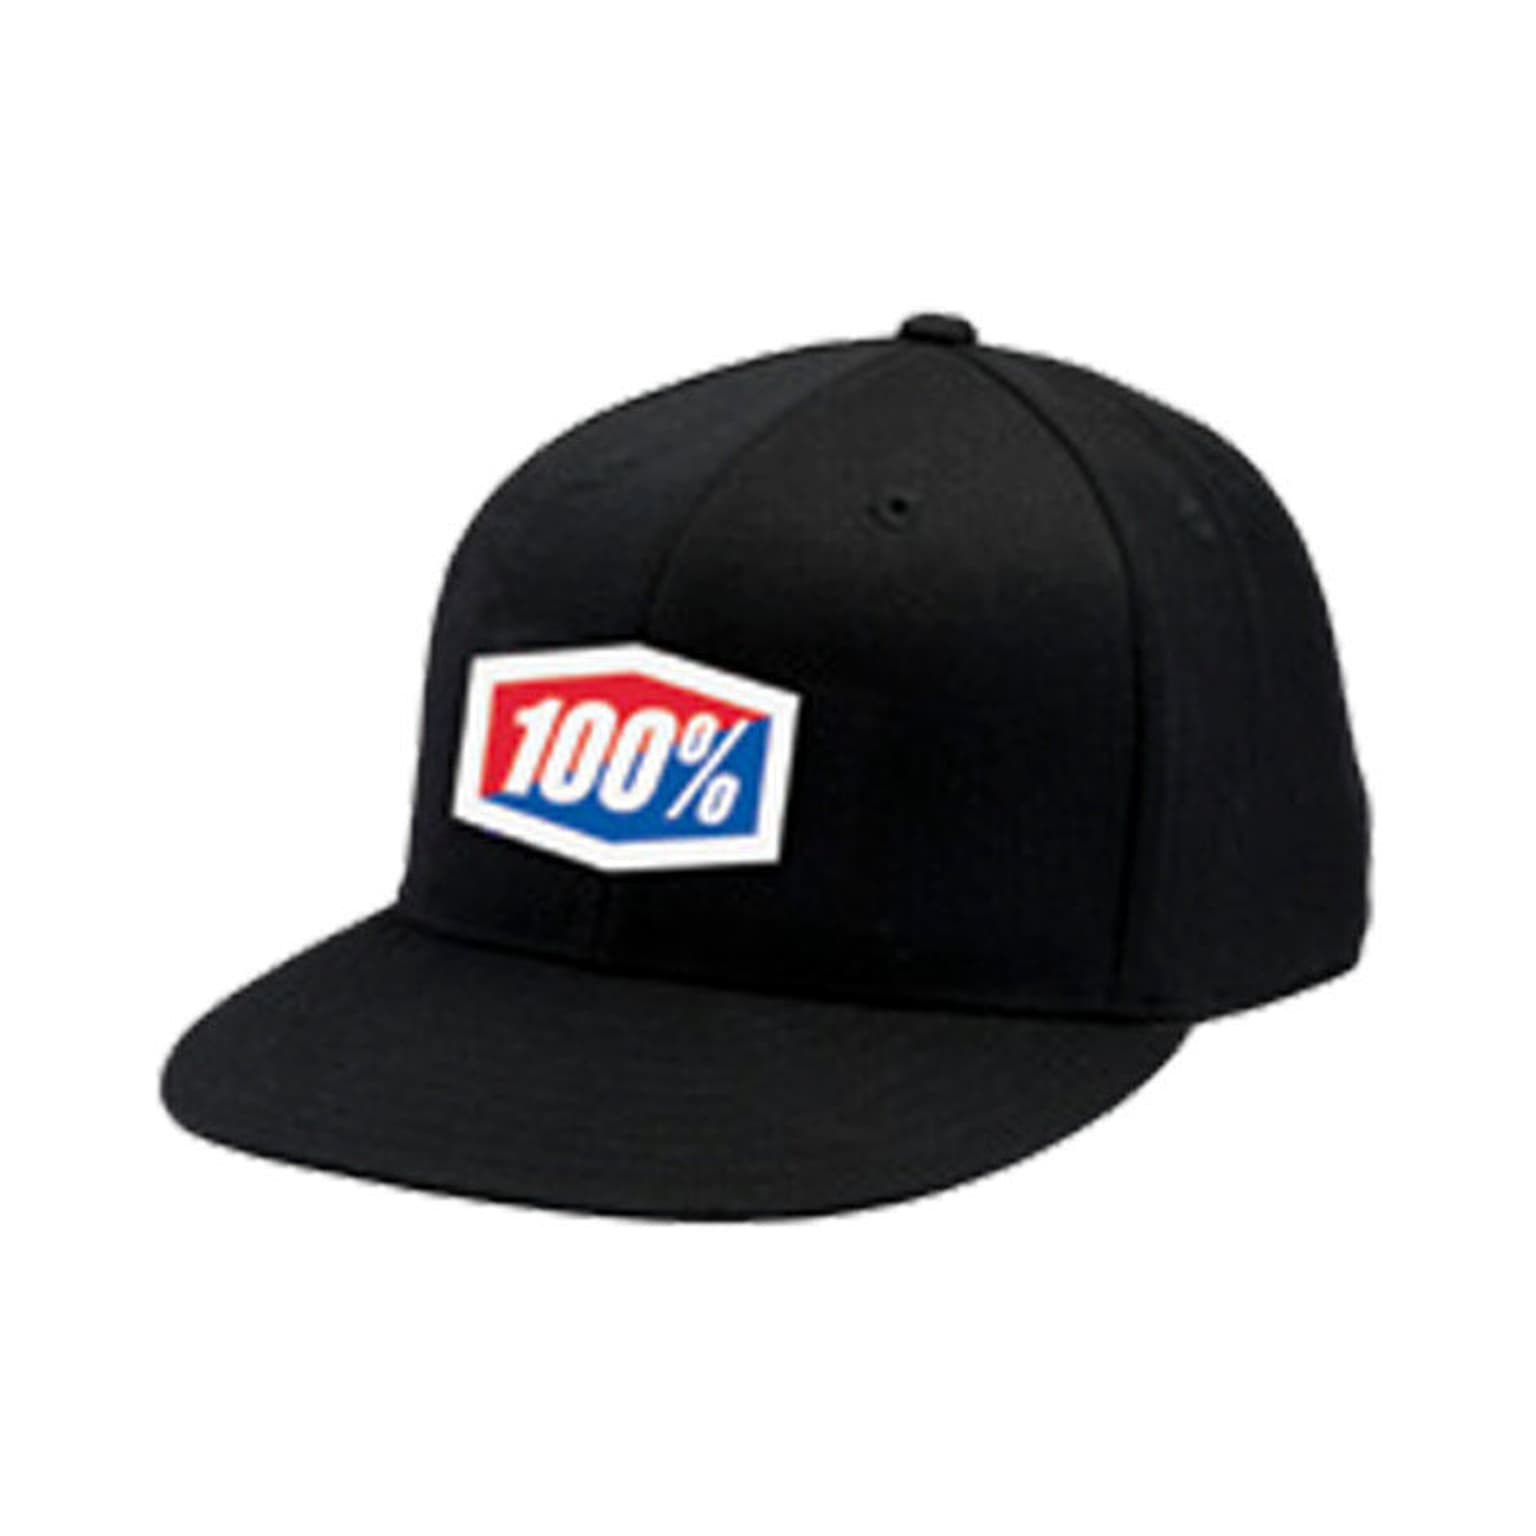 100% 100% Official J-Fit Flexfit Cap nero 1